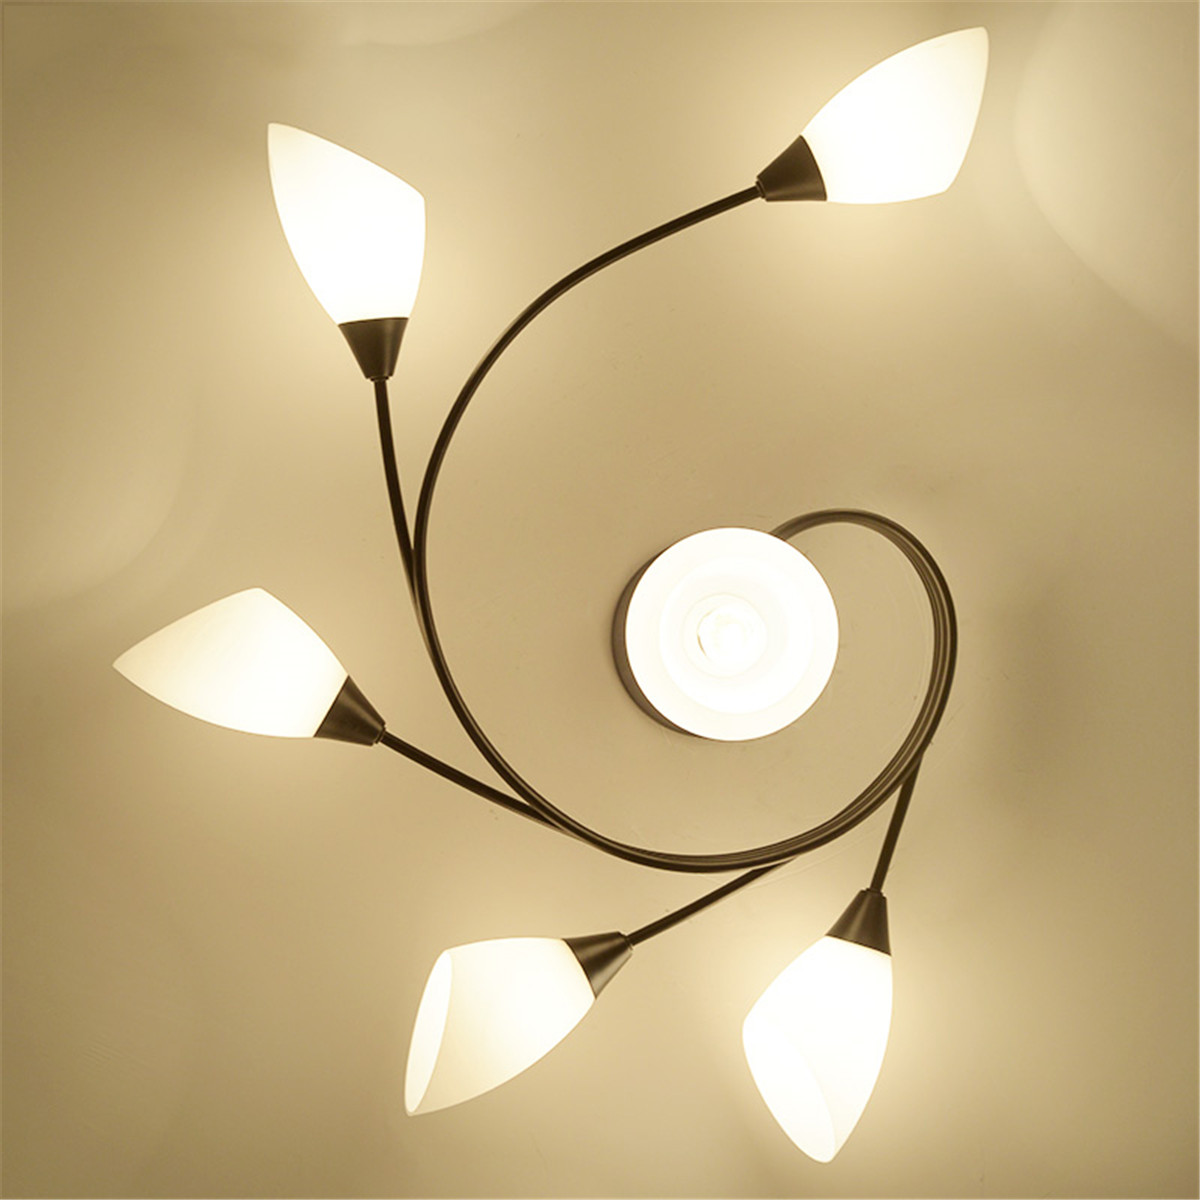 Modern-Ceiling-Light-Home-Bedroom-Pendant-Chandeliers-Lamp-Lighting-Fixture-1604532-3